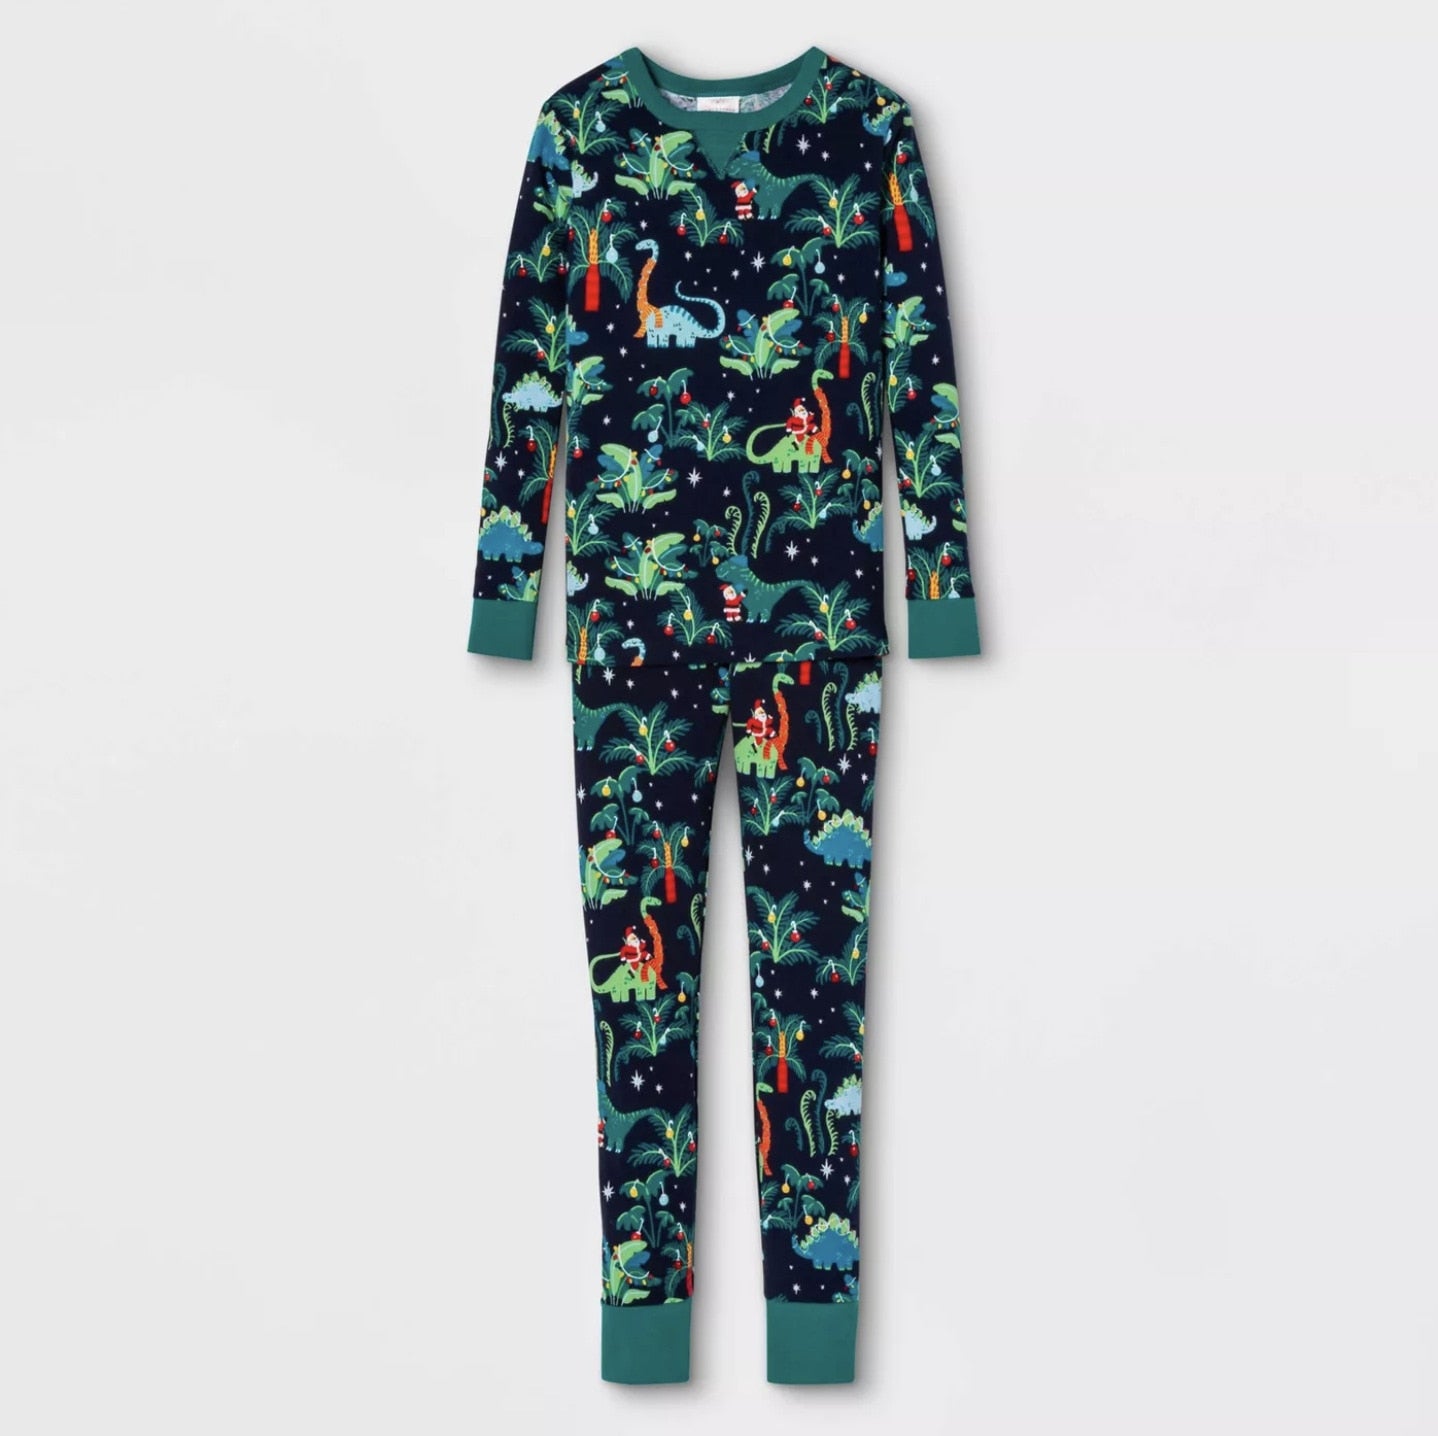 Matching Christmas Pajamas Family Set - Dinosaur